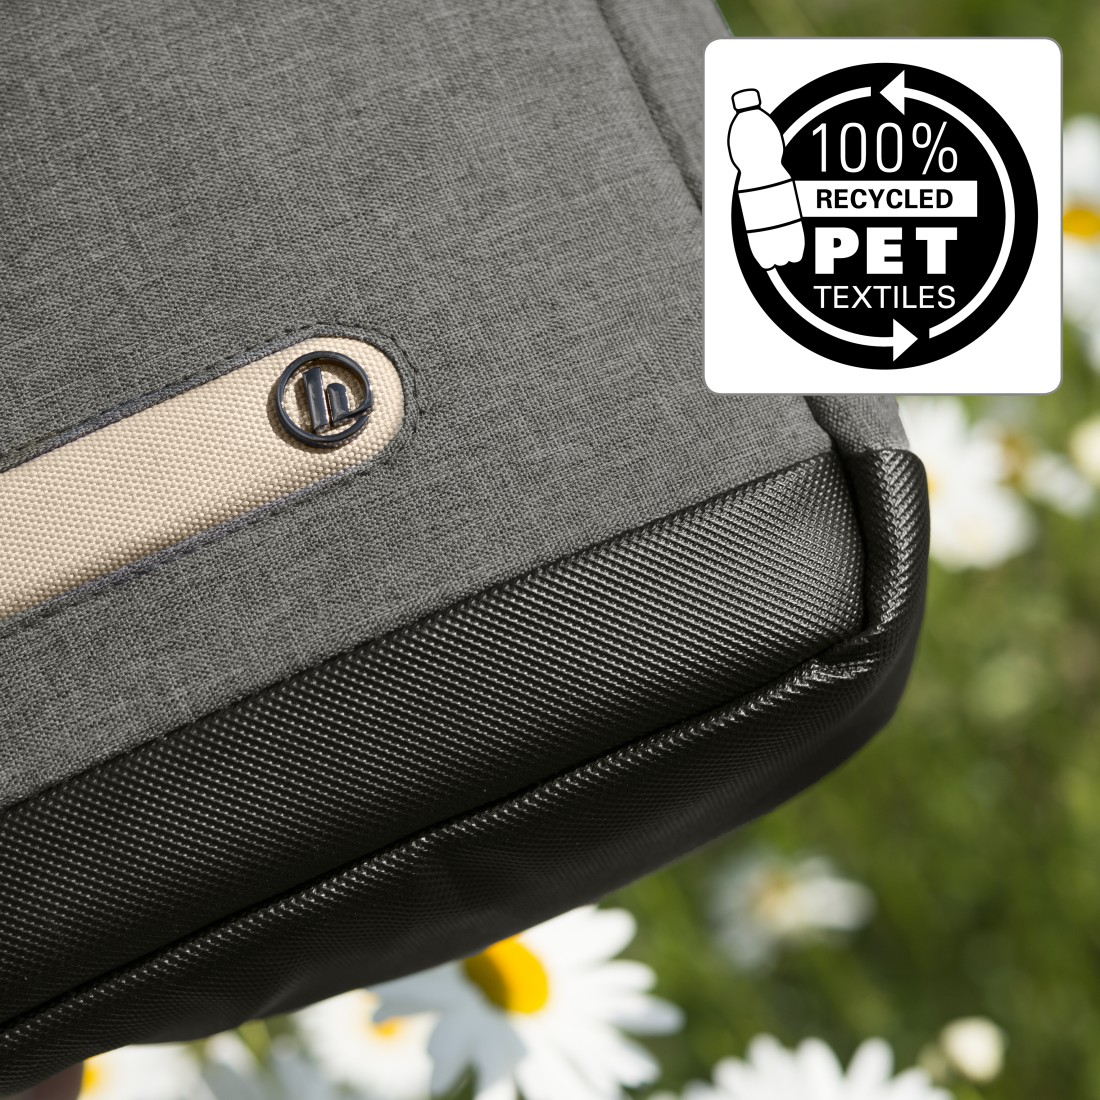 HAMA Terra 15.6 Zoll Notebooktasche Universal für 100% aus Grau Polyester, Recyceltem Umhängetasche